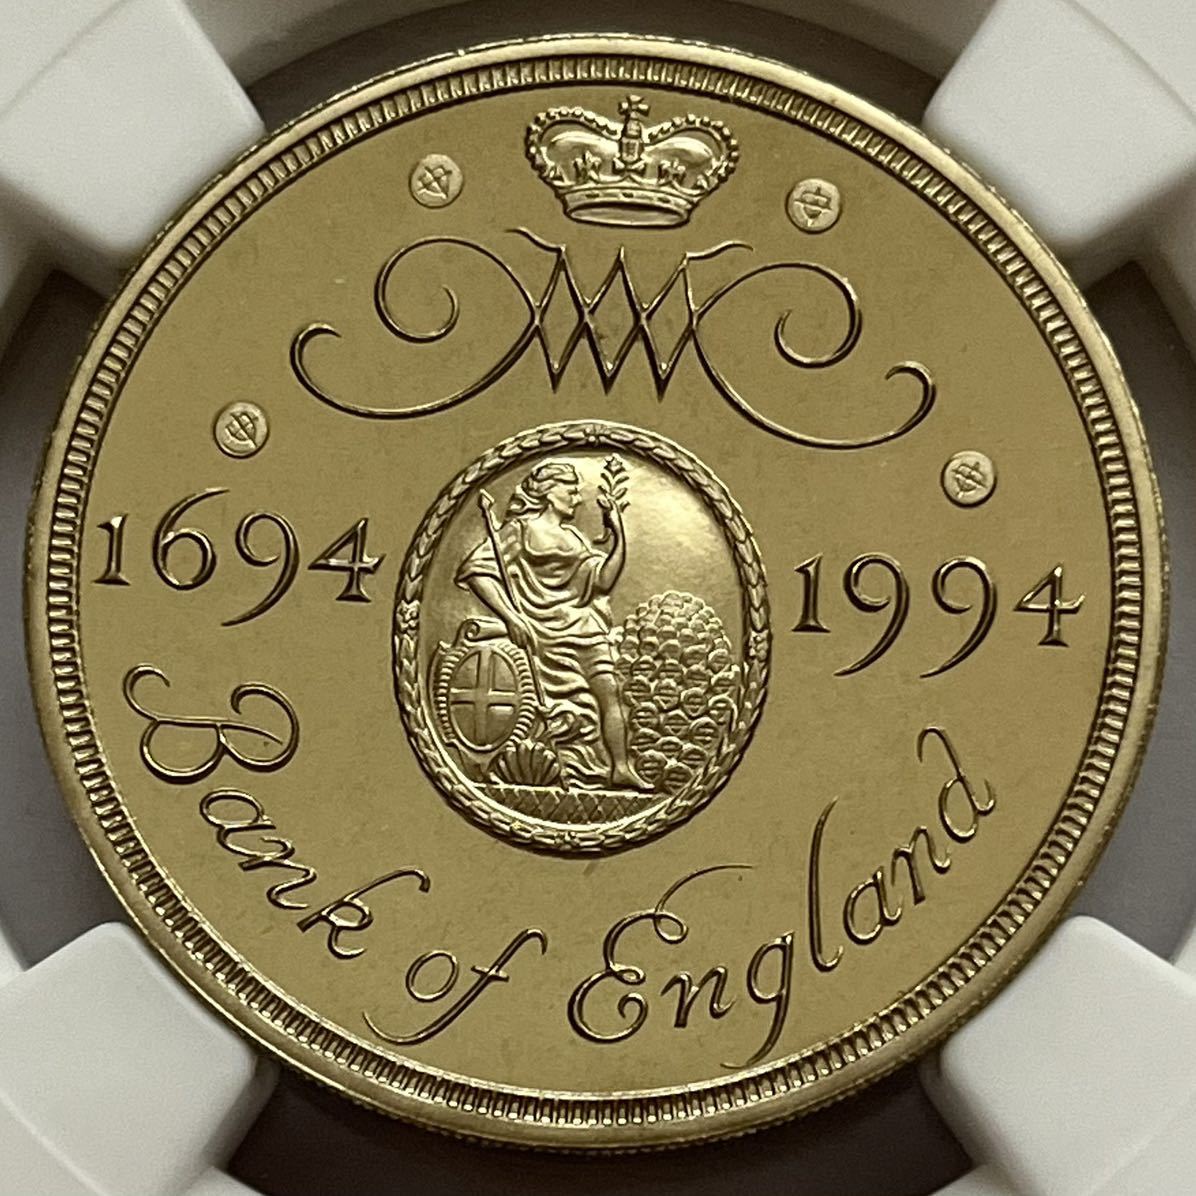 発行枚数1000枚 最高鑑定】1994年 イギリス イングランド銀行300周年